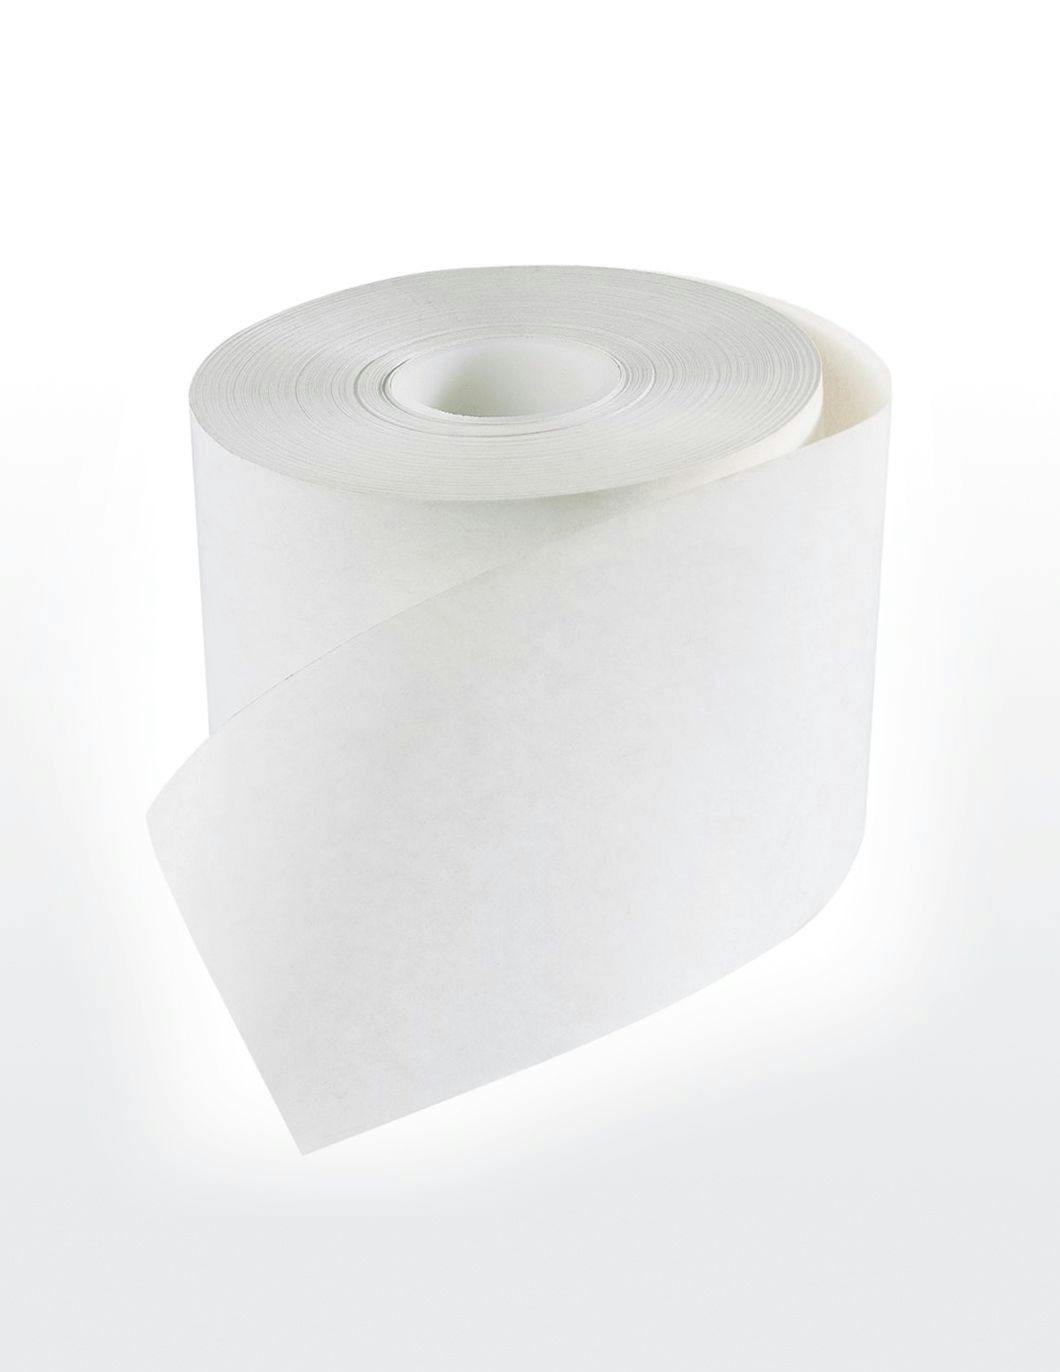 receipt-paper-rolls-4-rolls-box